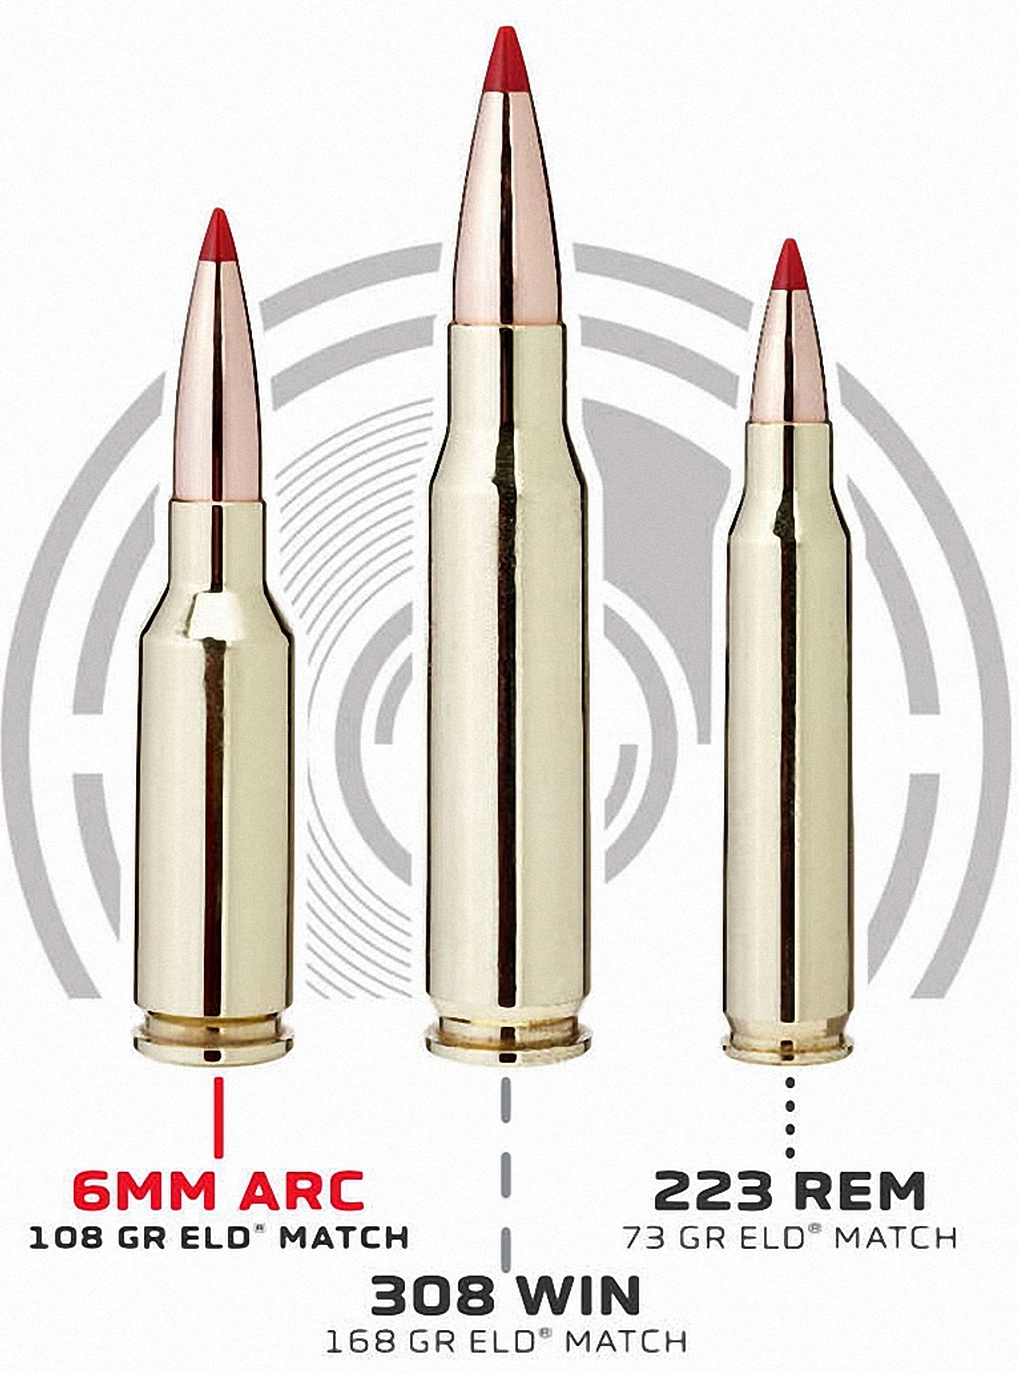 6 mm ARC обеспечивает значительно лучшую баллистику, чем 5,56 × 45 с аналог...